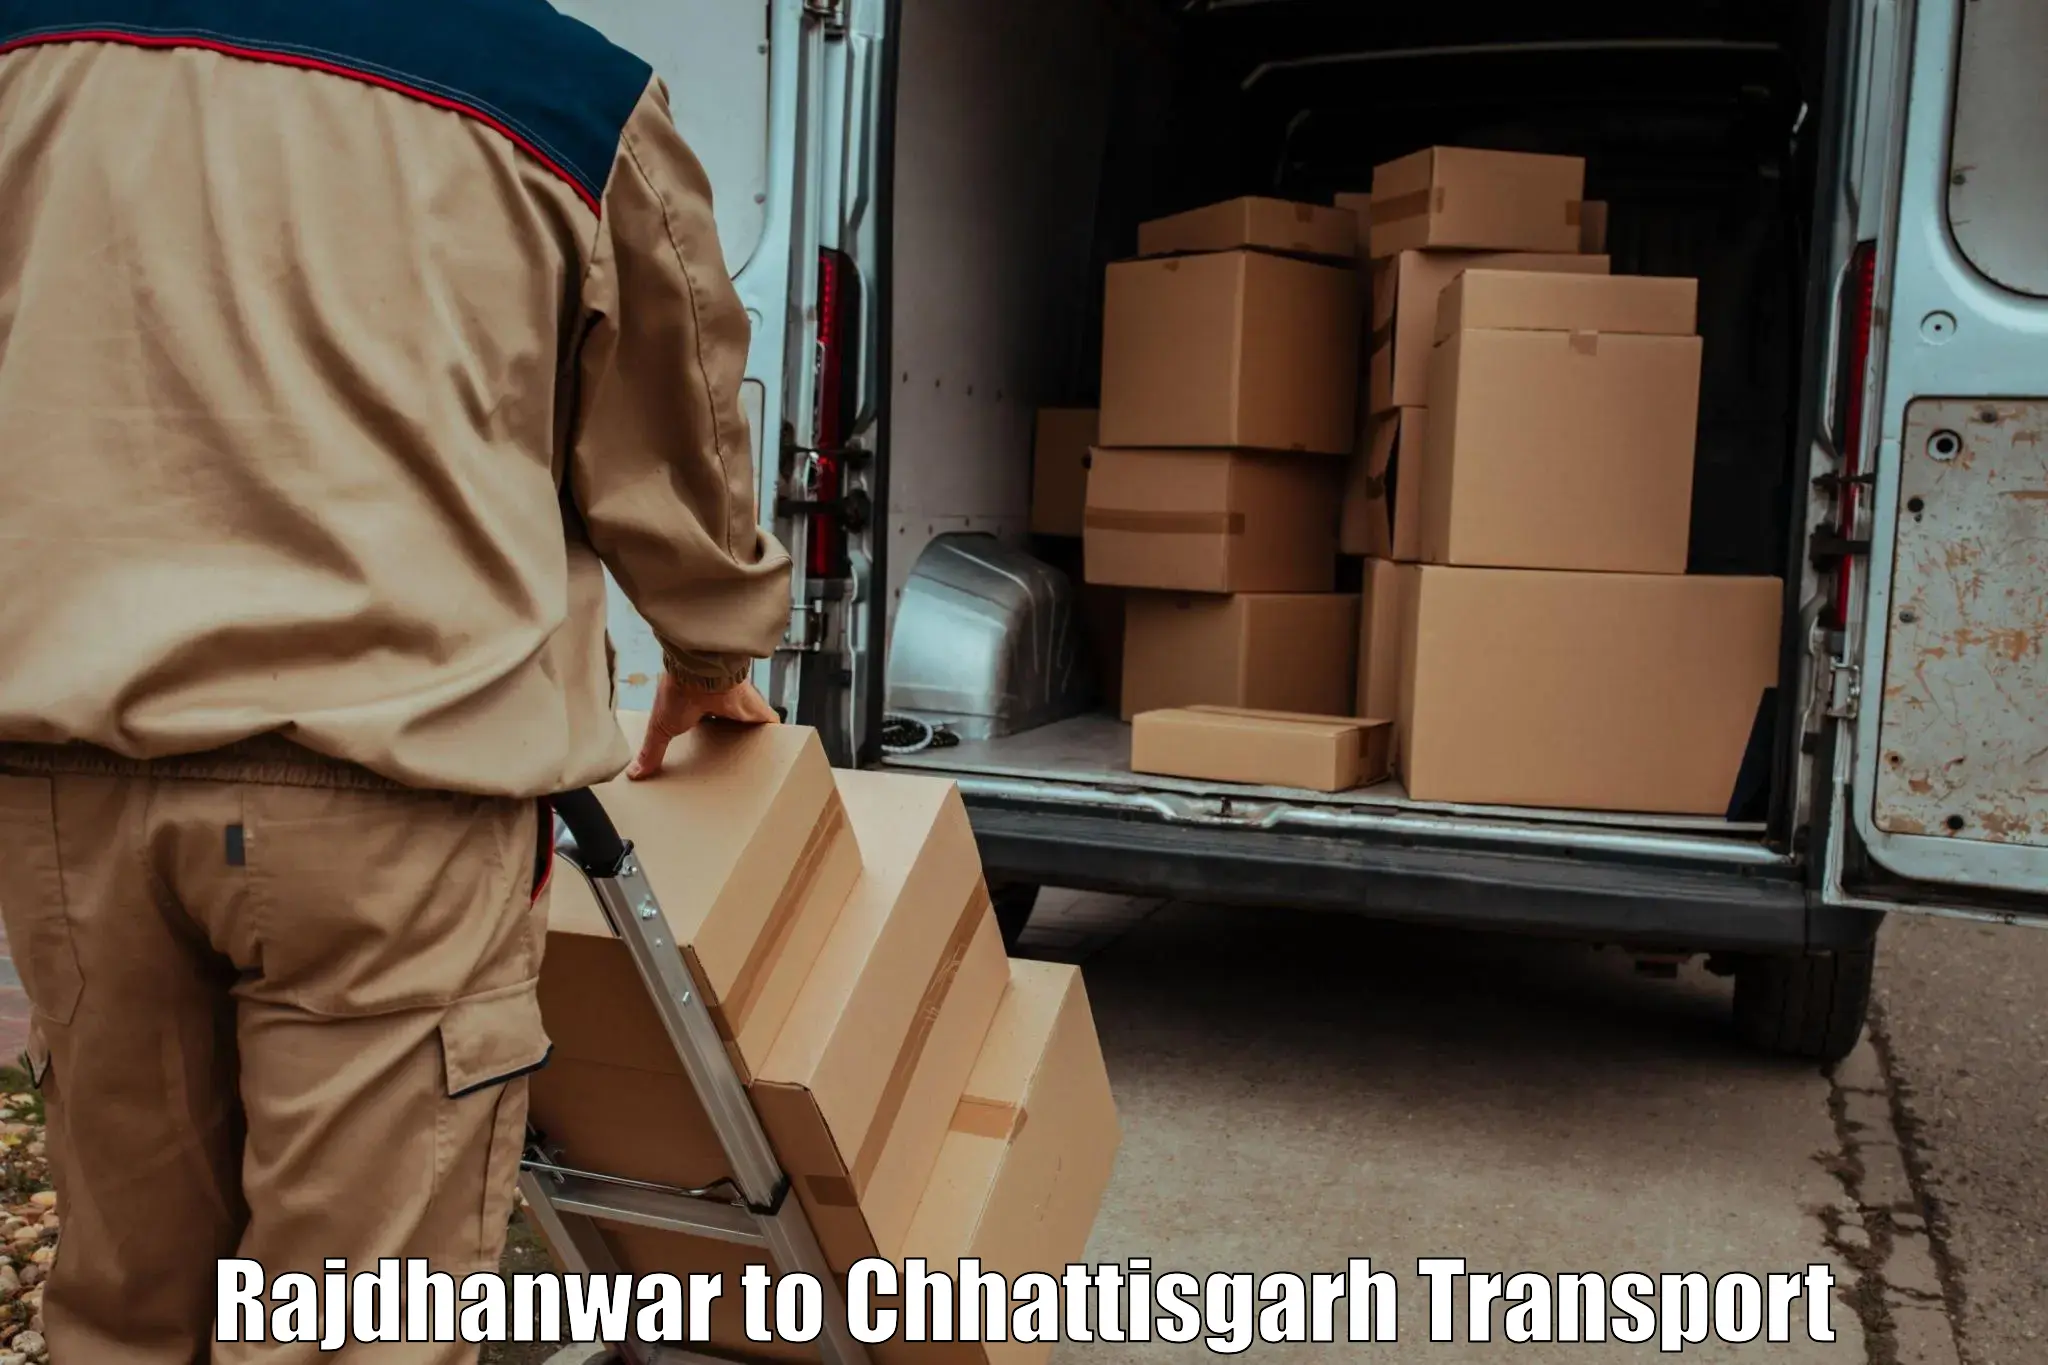 Delivery service Rajdhanwar to Bijapur Chhattisgarh